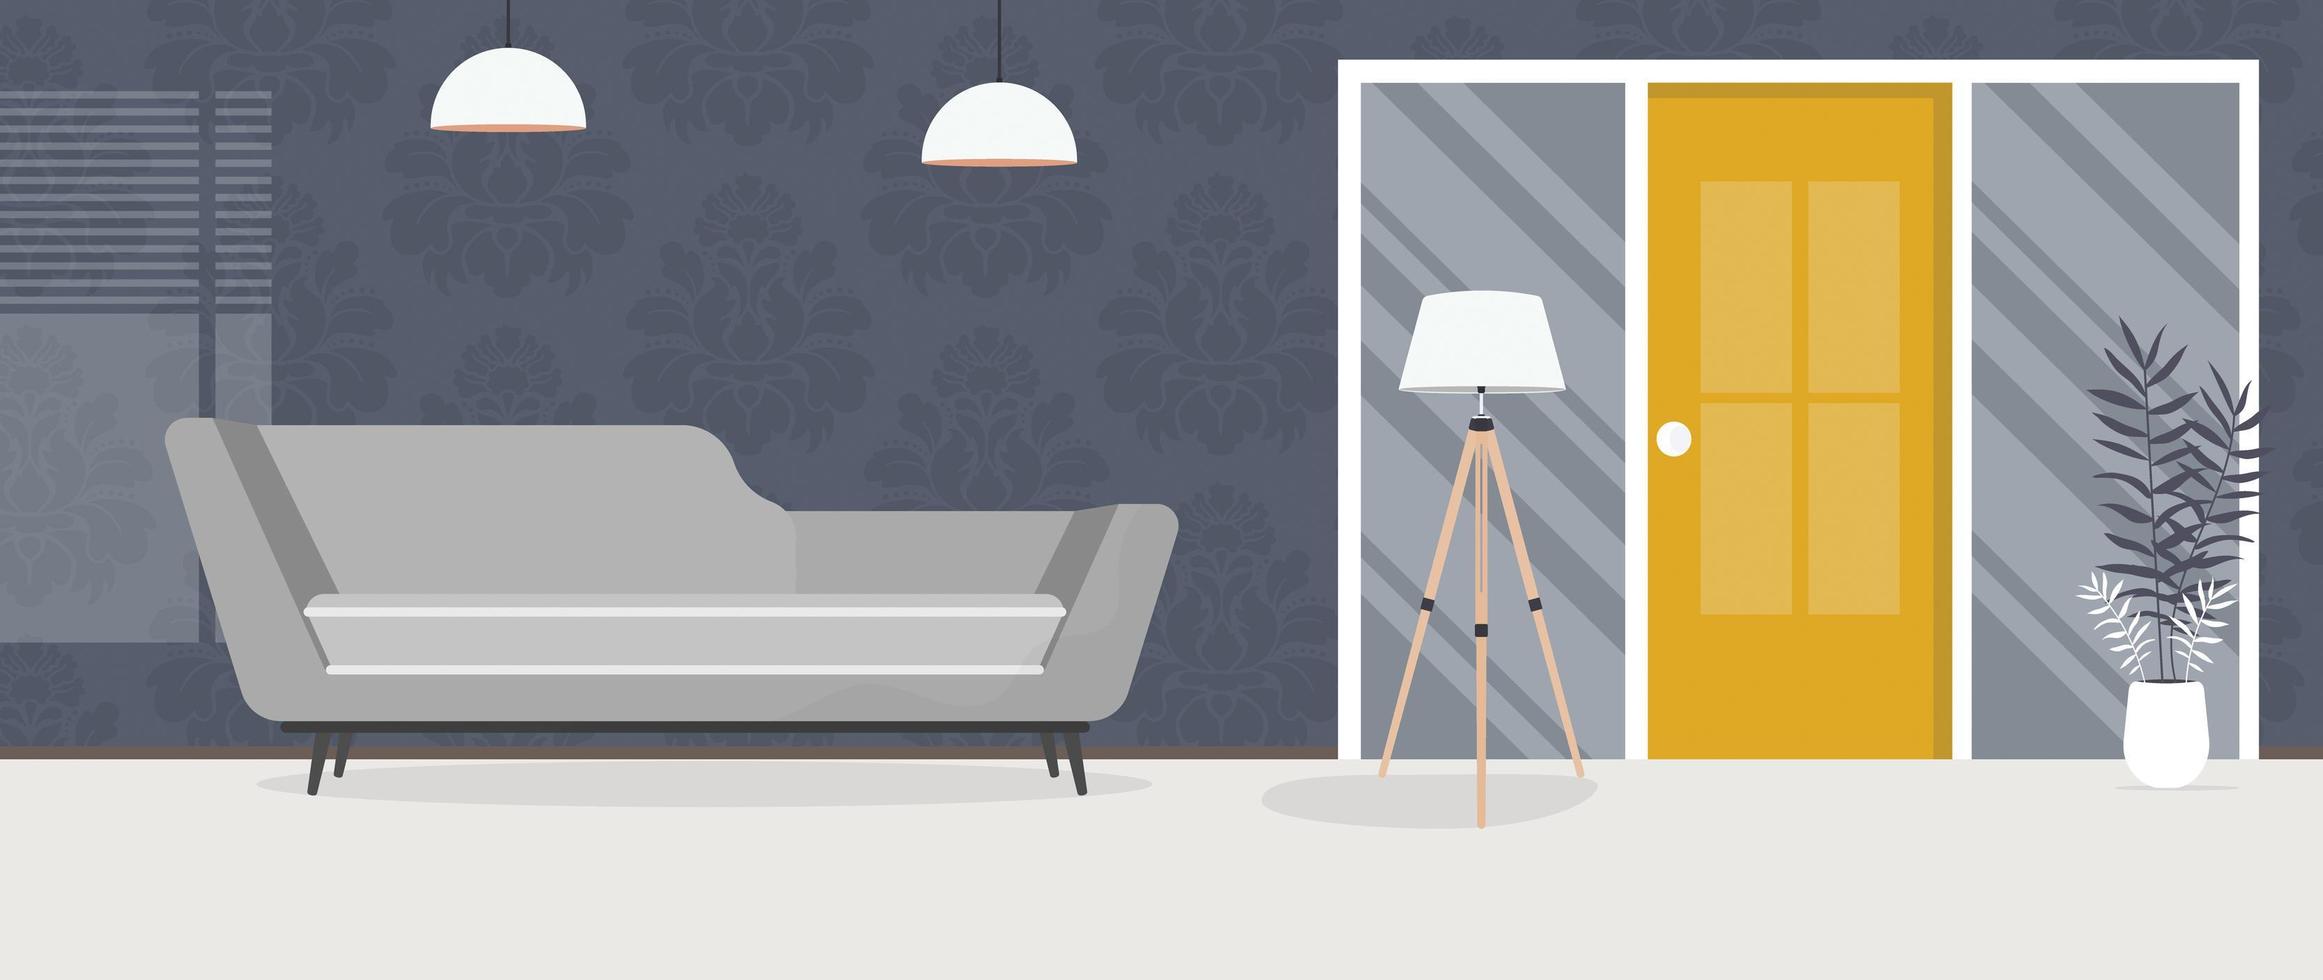 uma sala moderna com um sofá, uma lâmpada e uma planta de casa. estilo de desenho animado. ilustração vetorial. vetor